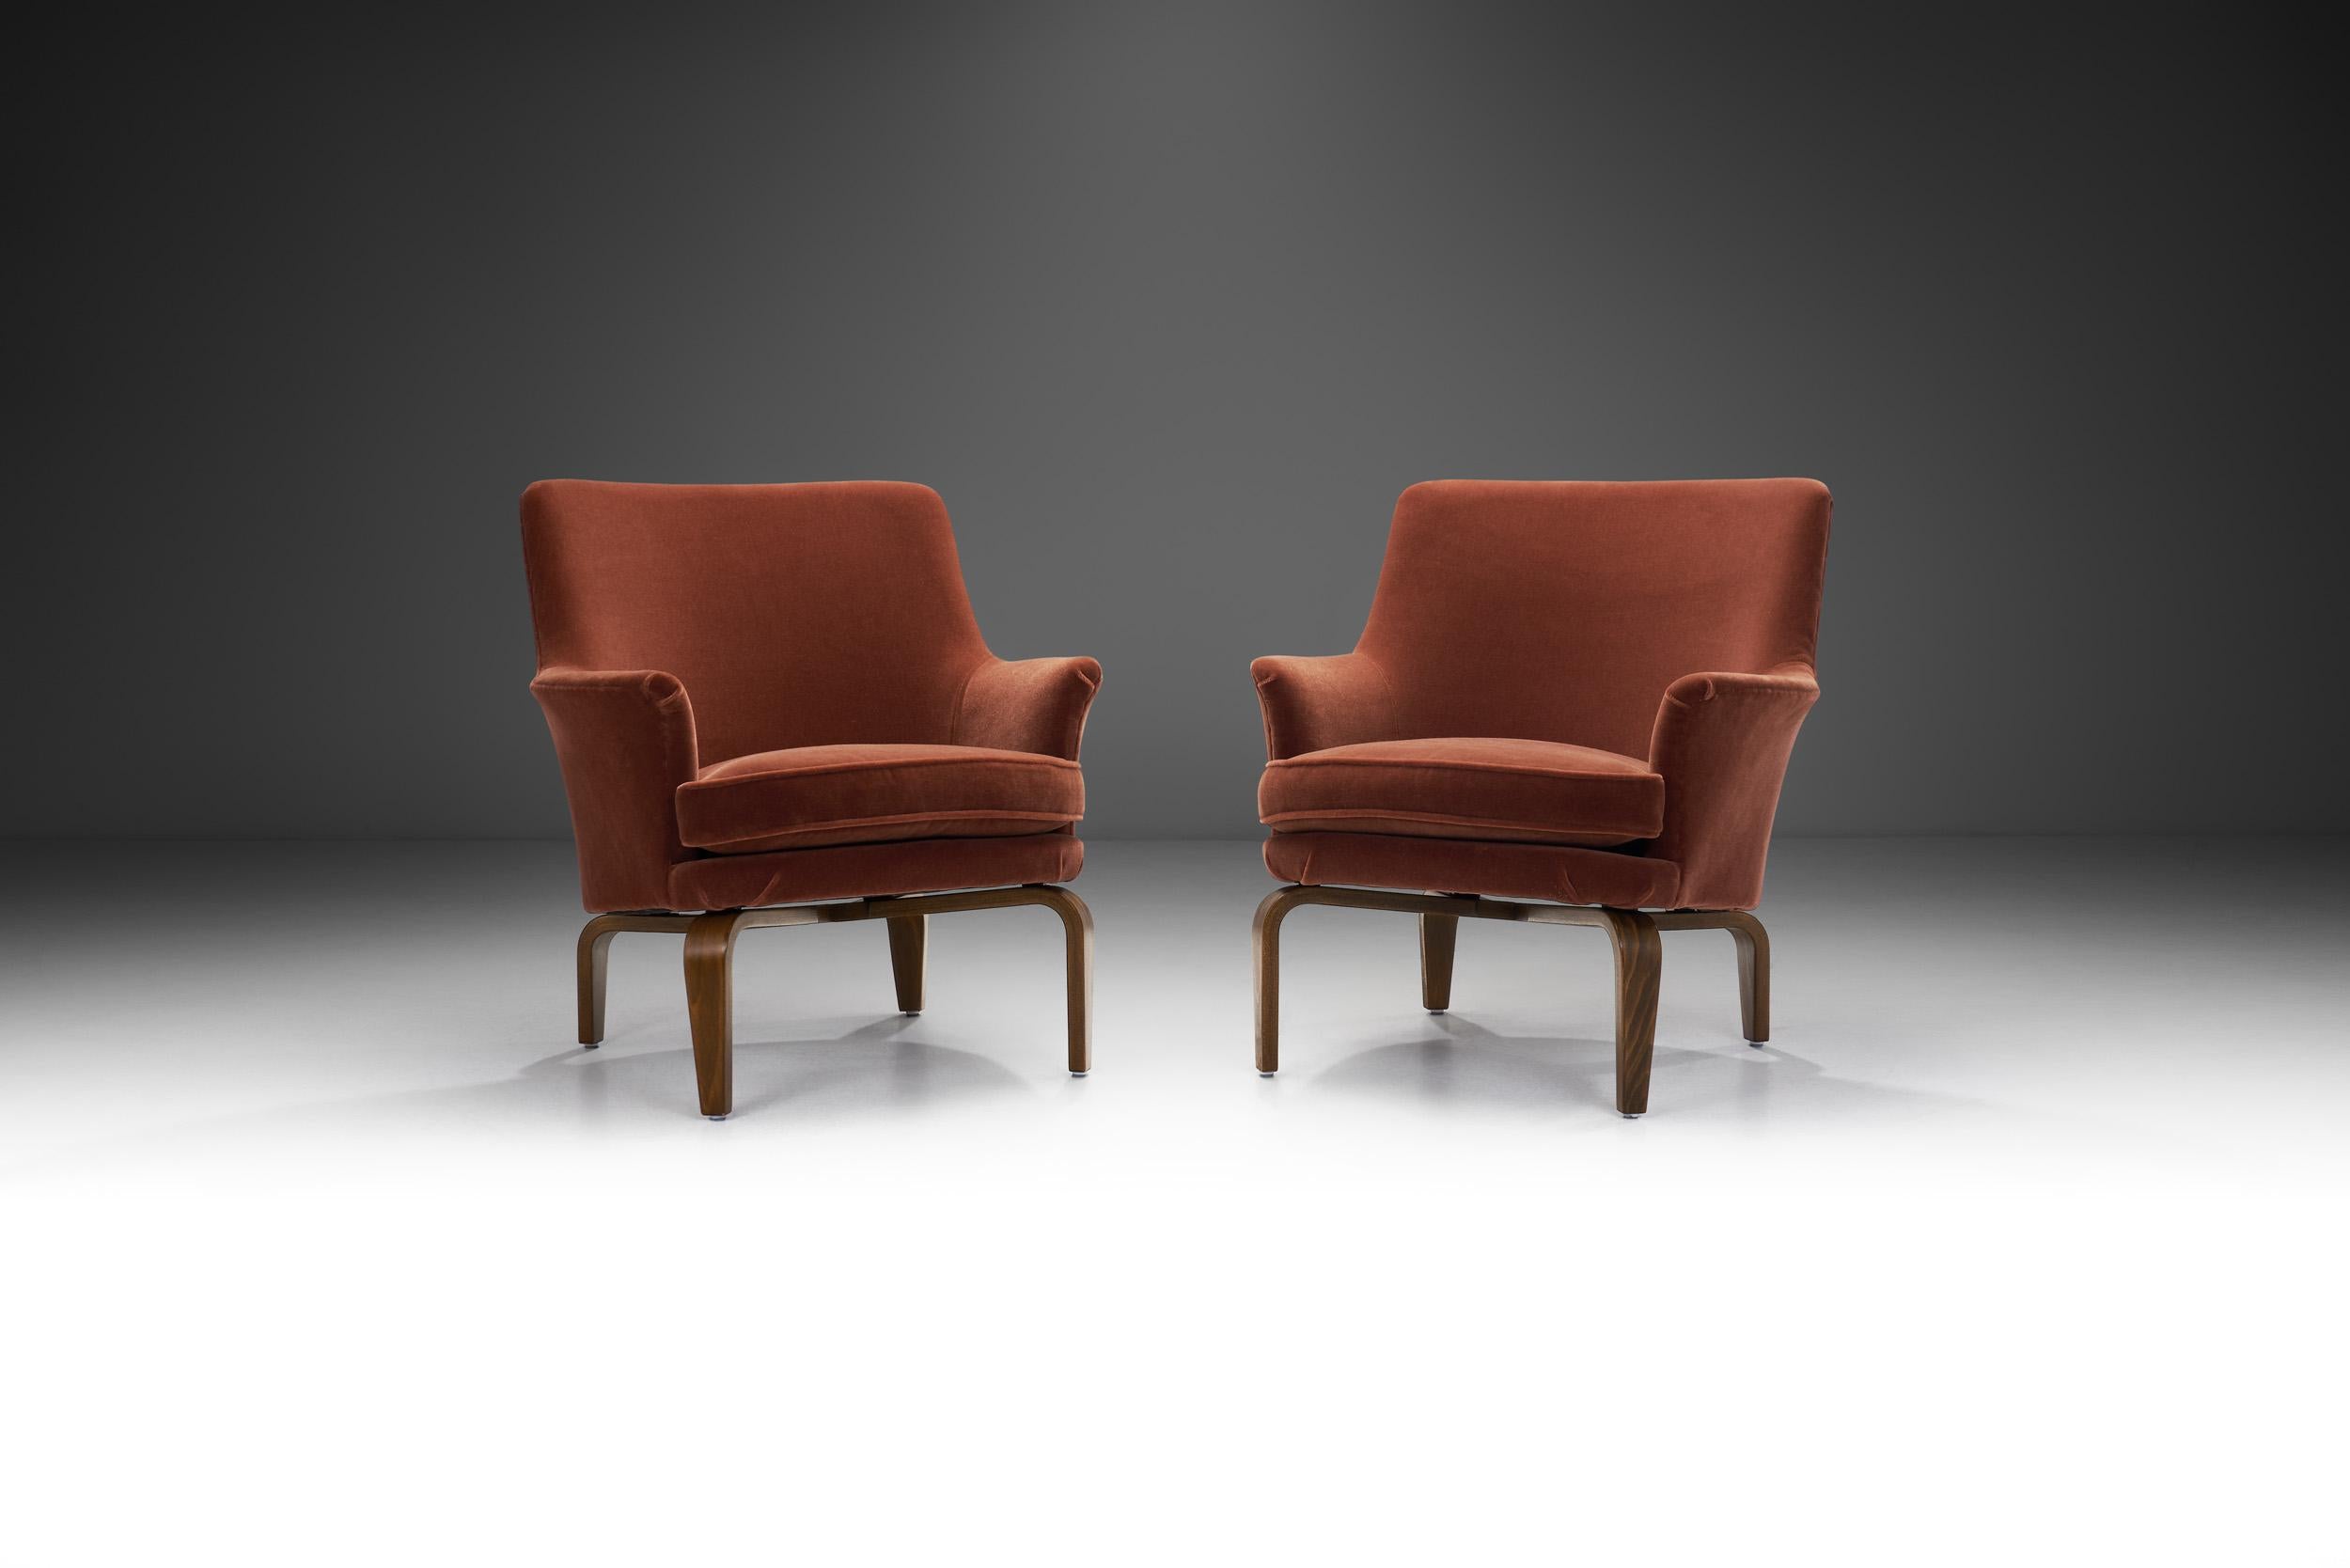 Les créations conceptuelles du designer suédois Arne Norell ont été reconnues pour leur utilisation de matériaux et de formes traditionnels, tels que les tissus et le bois, combinés à des lignes simples et avant-gardistes. Cette paire de chaises